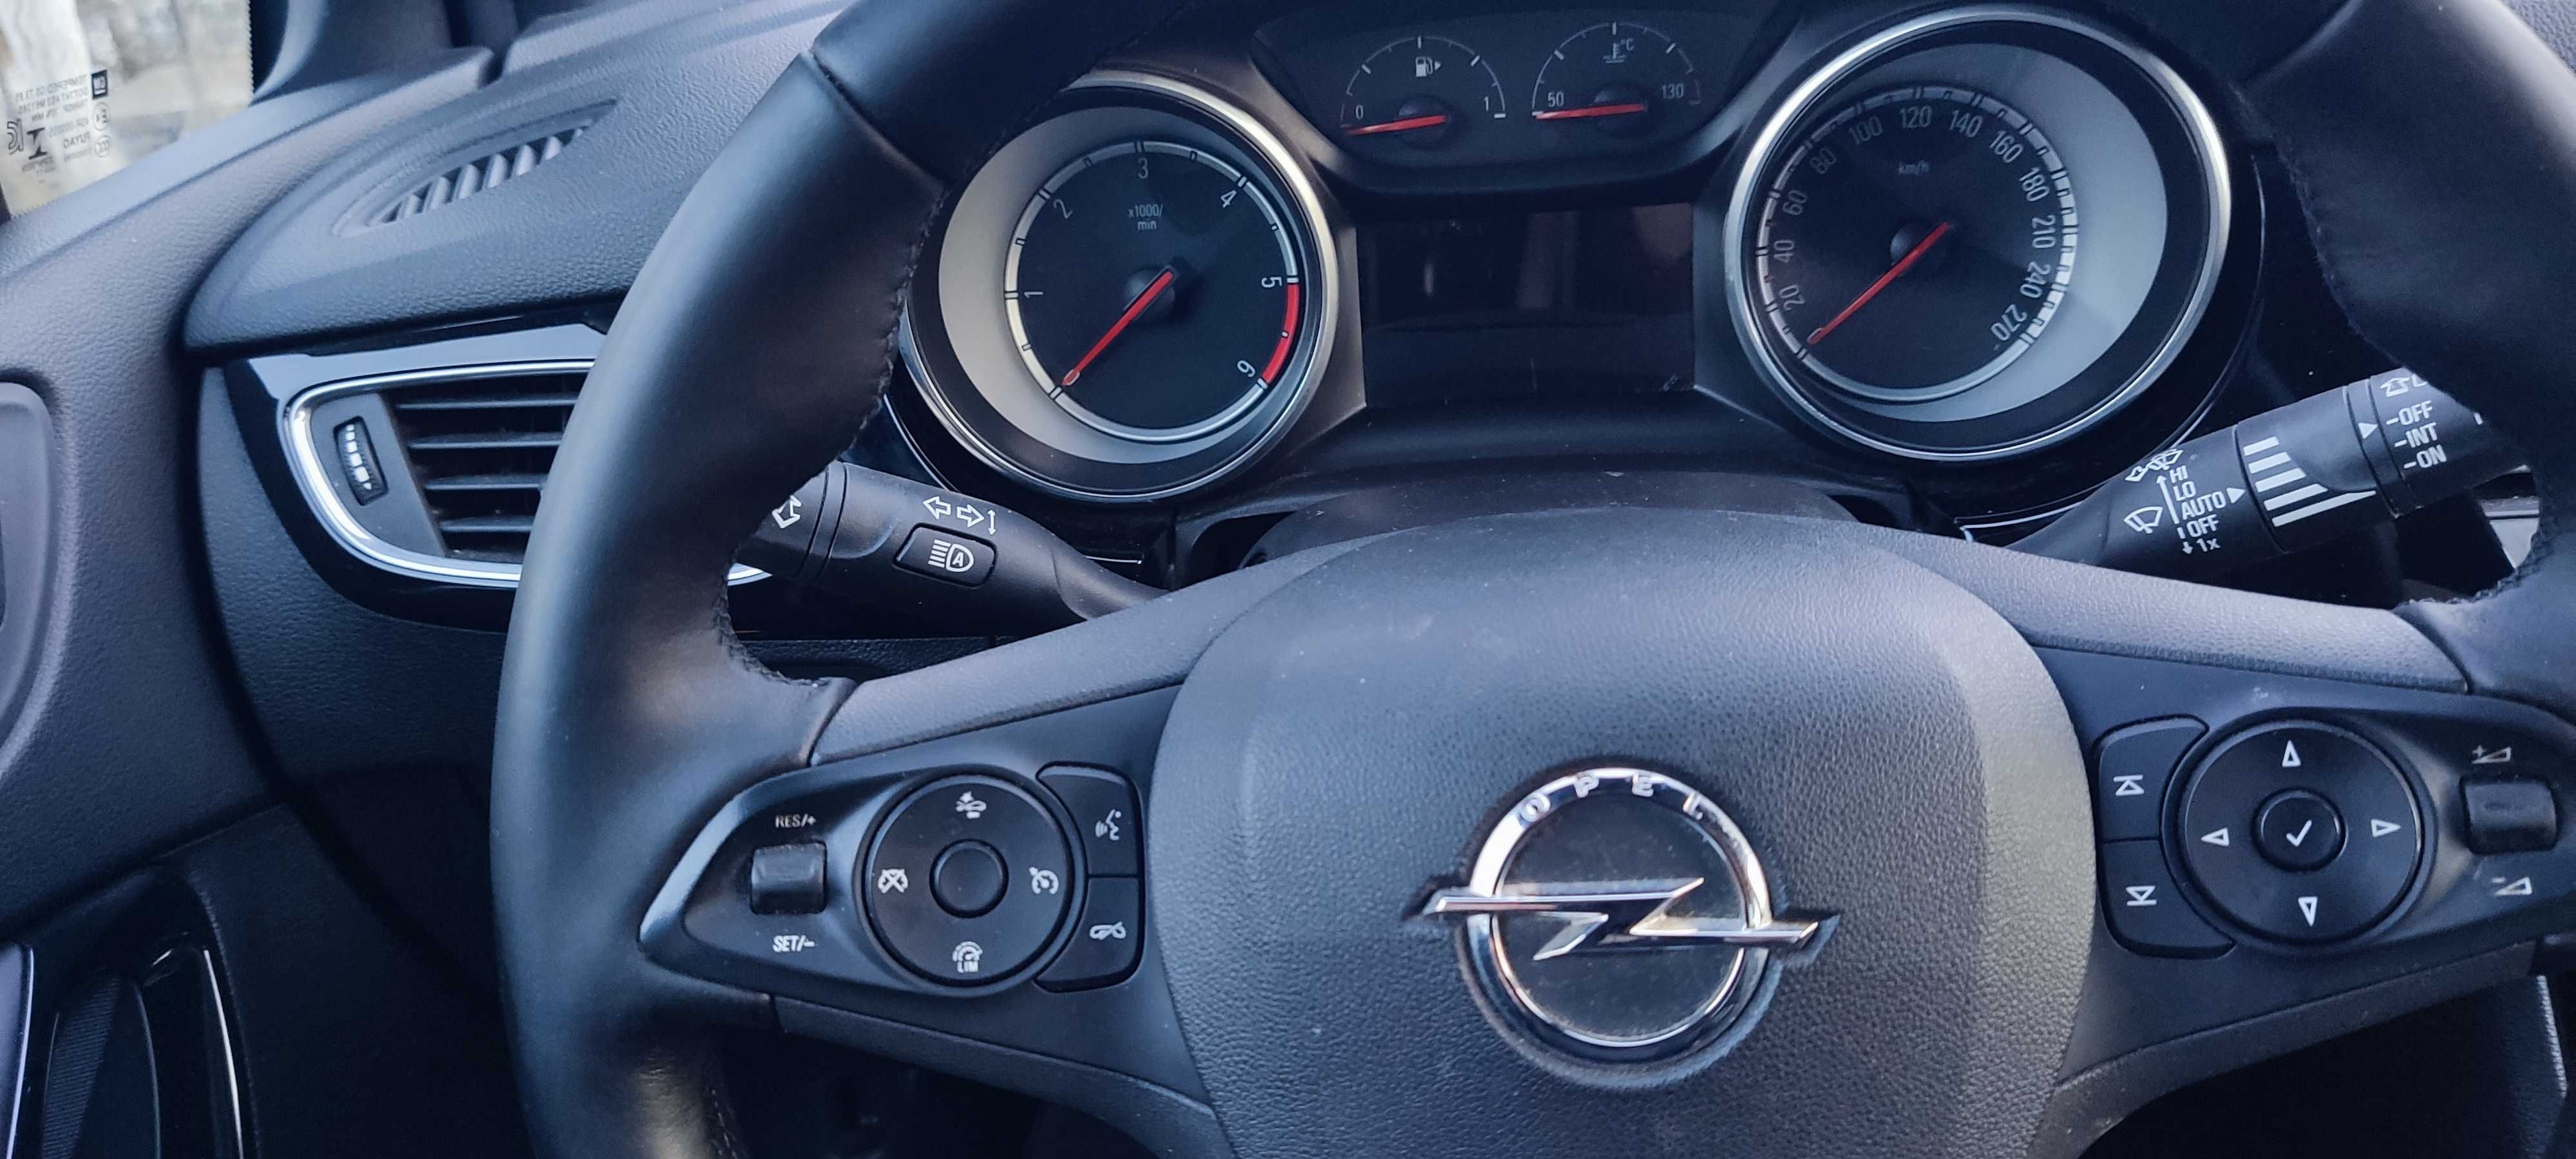 Продам авто Opel-Astra K 2018 p. Cosmo